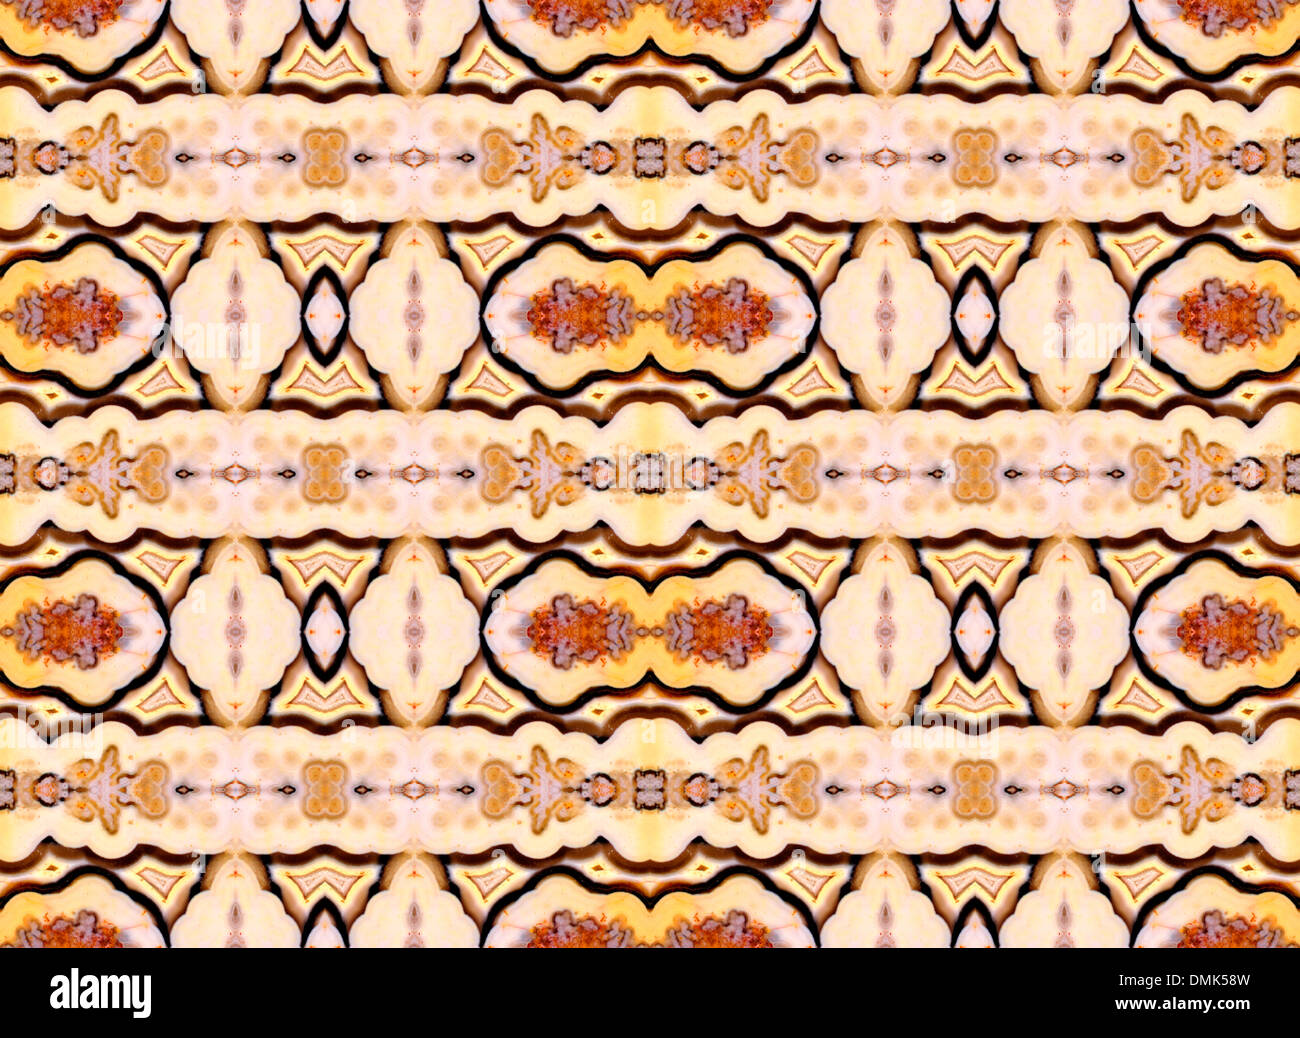 Tranche polie de Jasper (opaque, forme à grain fin de calcédoine) motif symétrique faite par la répétition de l'image Banque D'Images